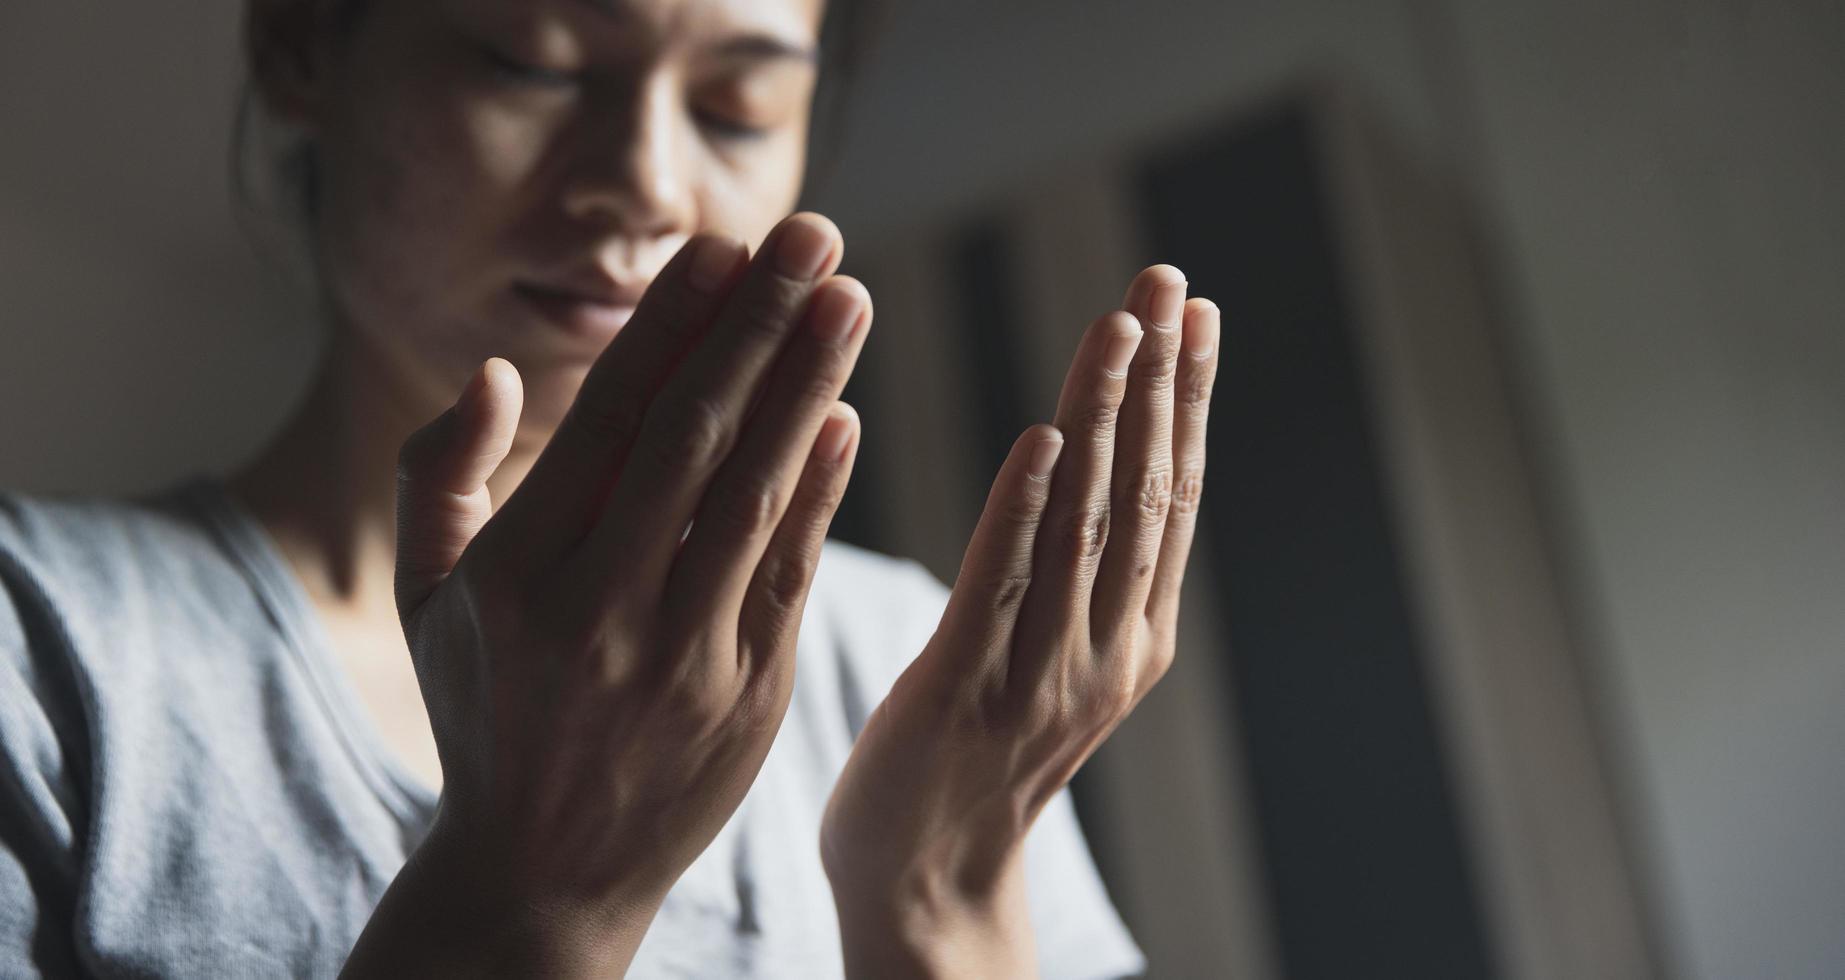 prière de crise de la vie chrétienne à dieu. une femme prie pour que Dieu bénisse de souhaiter avoir une vie meilleure. mains de femme priant Dieu. photo